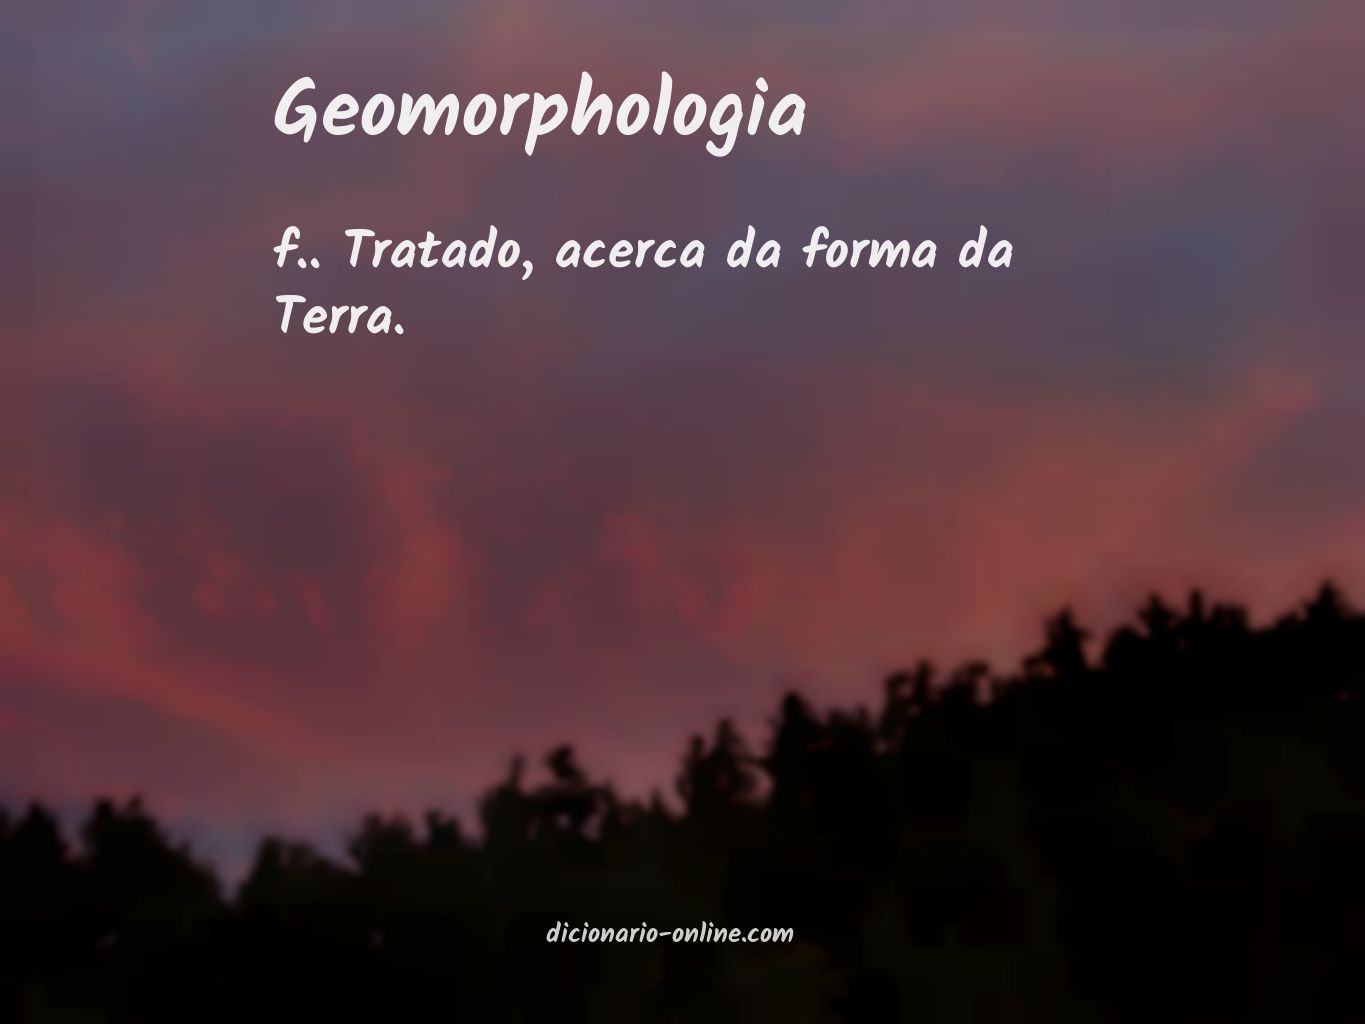 Significado de geomorphologia